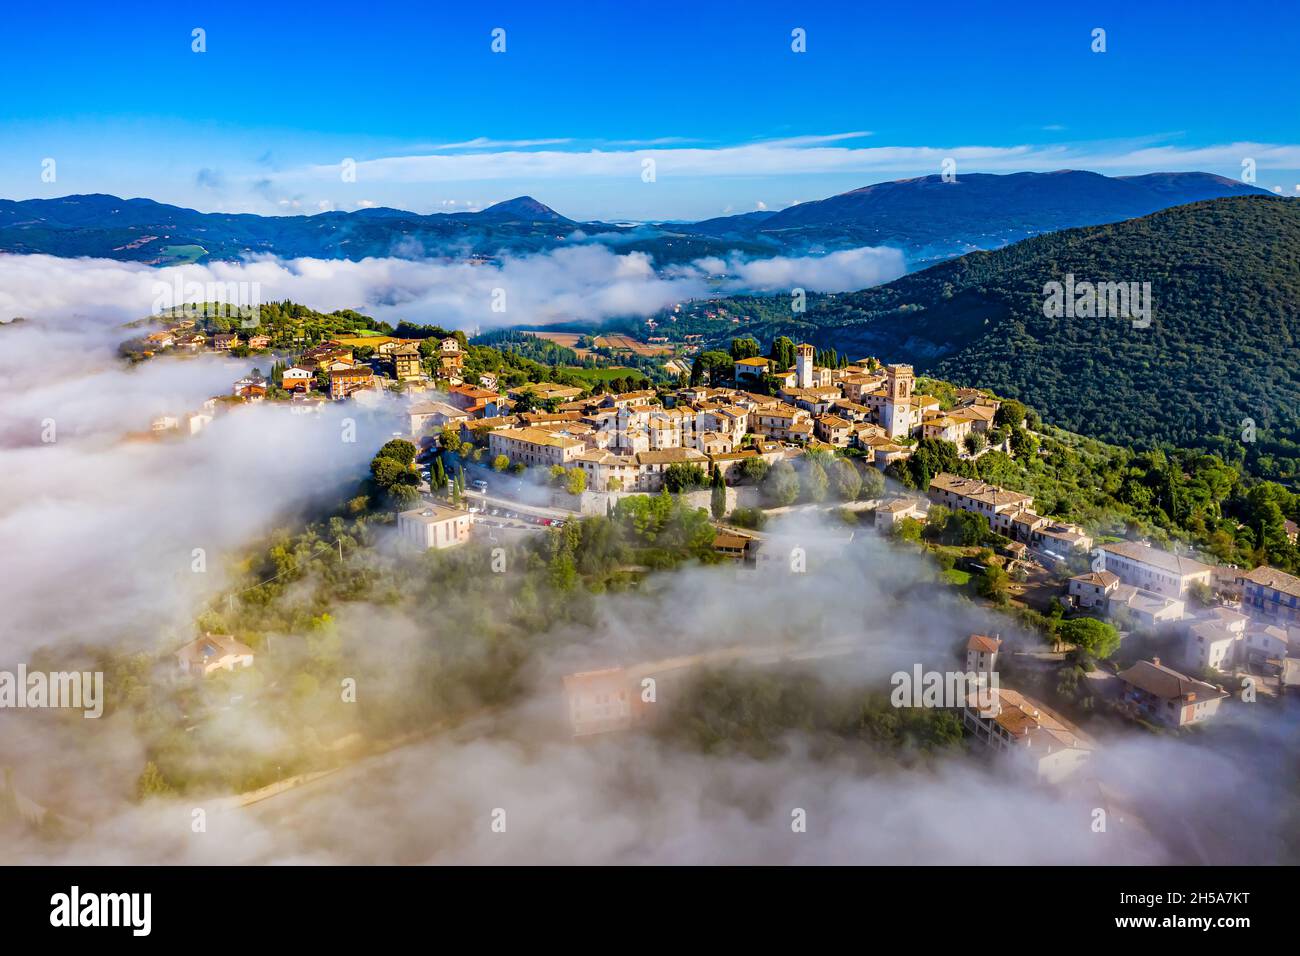 Italia dall'alto | Schöne Landschaften aus Italien der Luft gefilmt Foto Stock